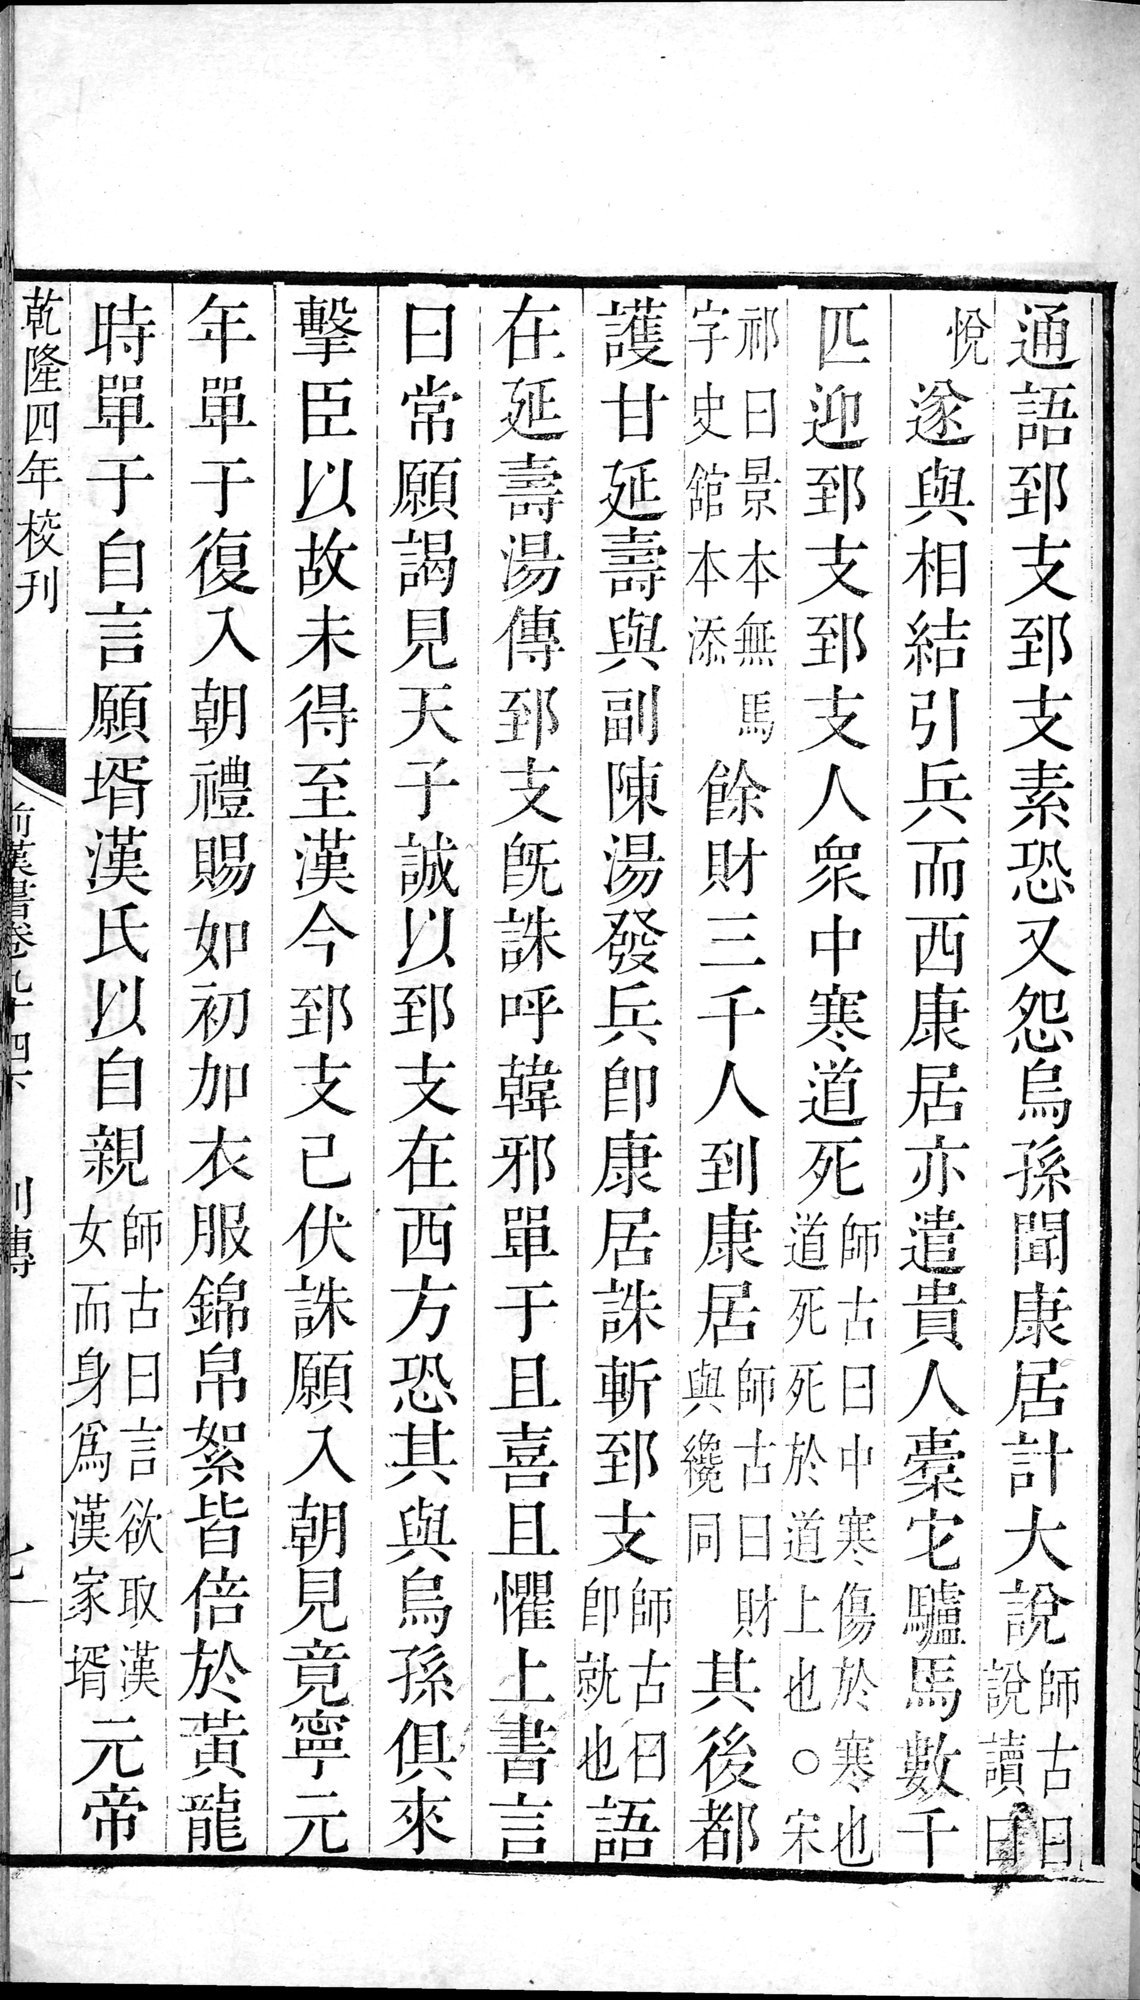 前漢書 : vol.94 bottom / Page 13 (Grayscale High Resolution Image)